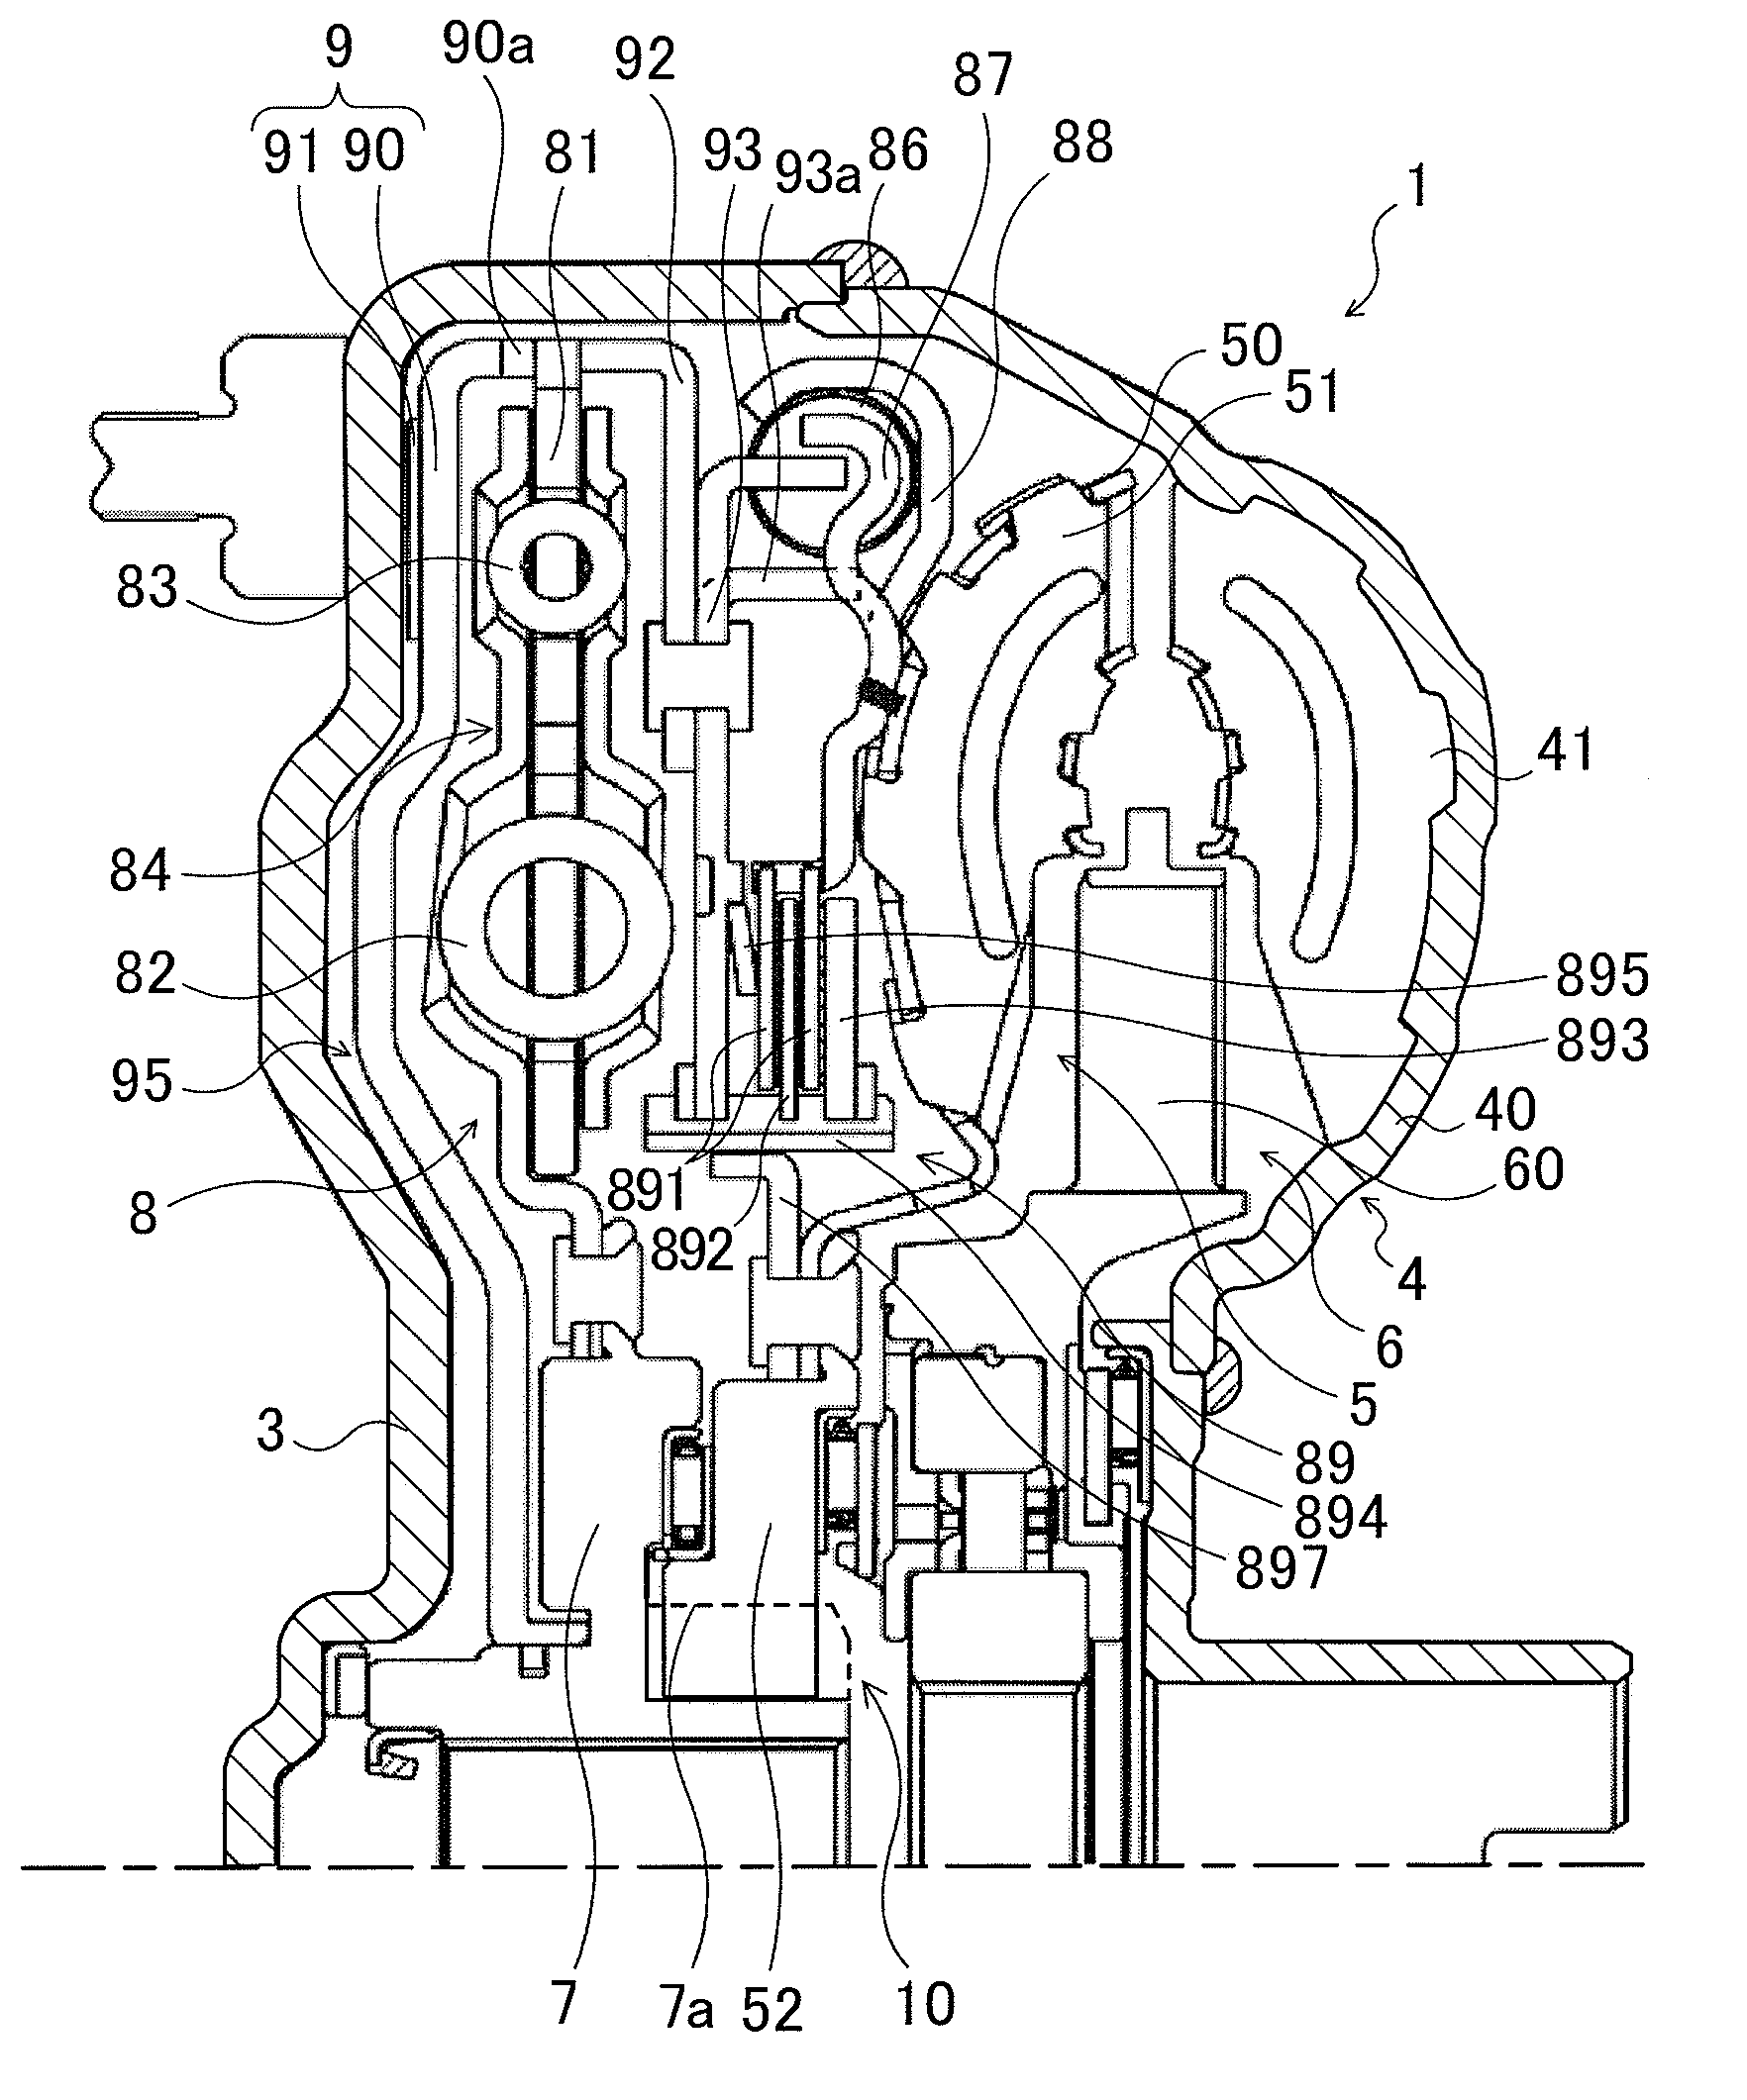 Hydraulic transmission apparatus